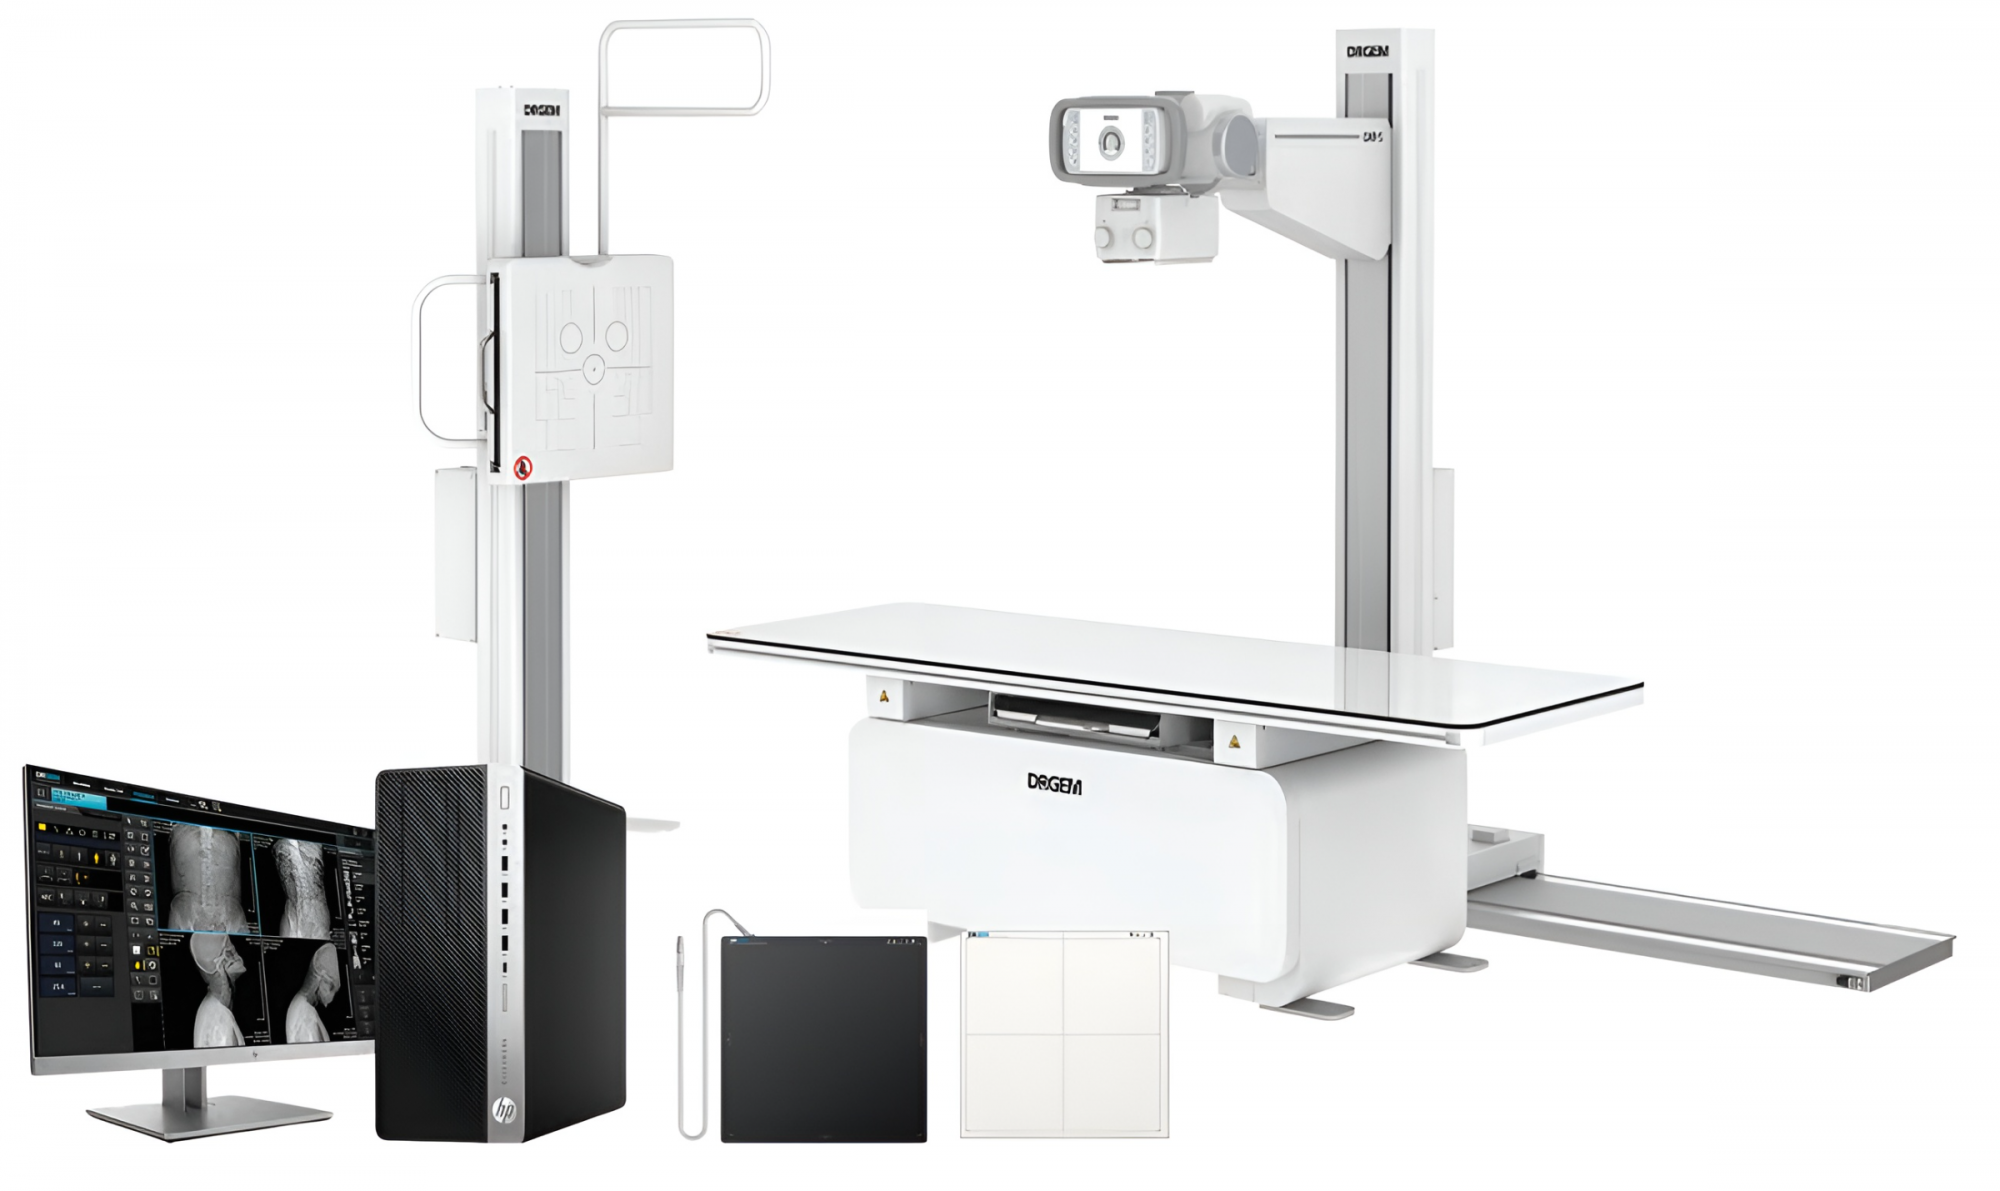 Hệ thống X-quang chẩn đoán kỹ thuật số